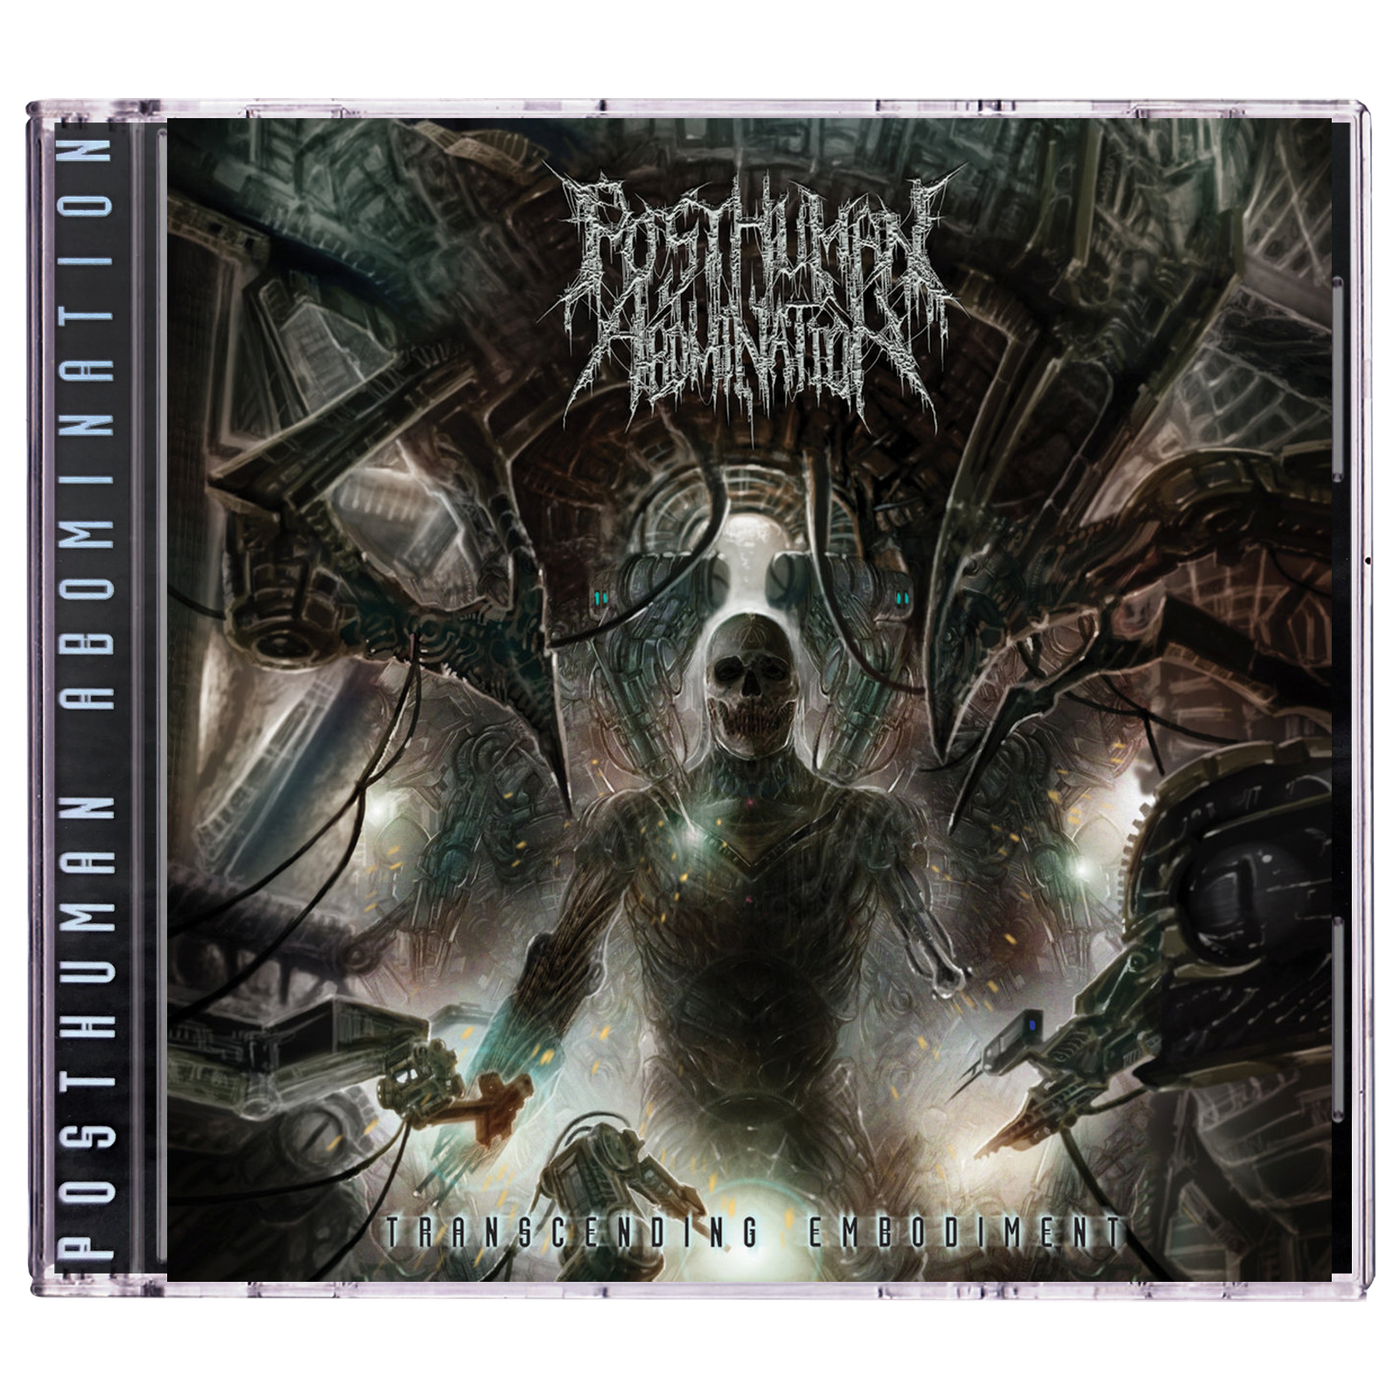 Posthuman Abomination 'Transcending Embodiment' CD